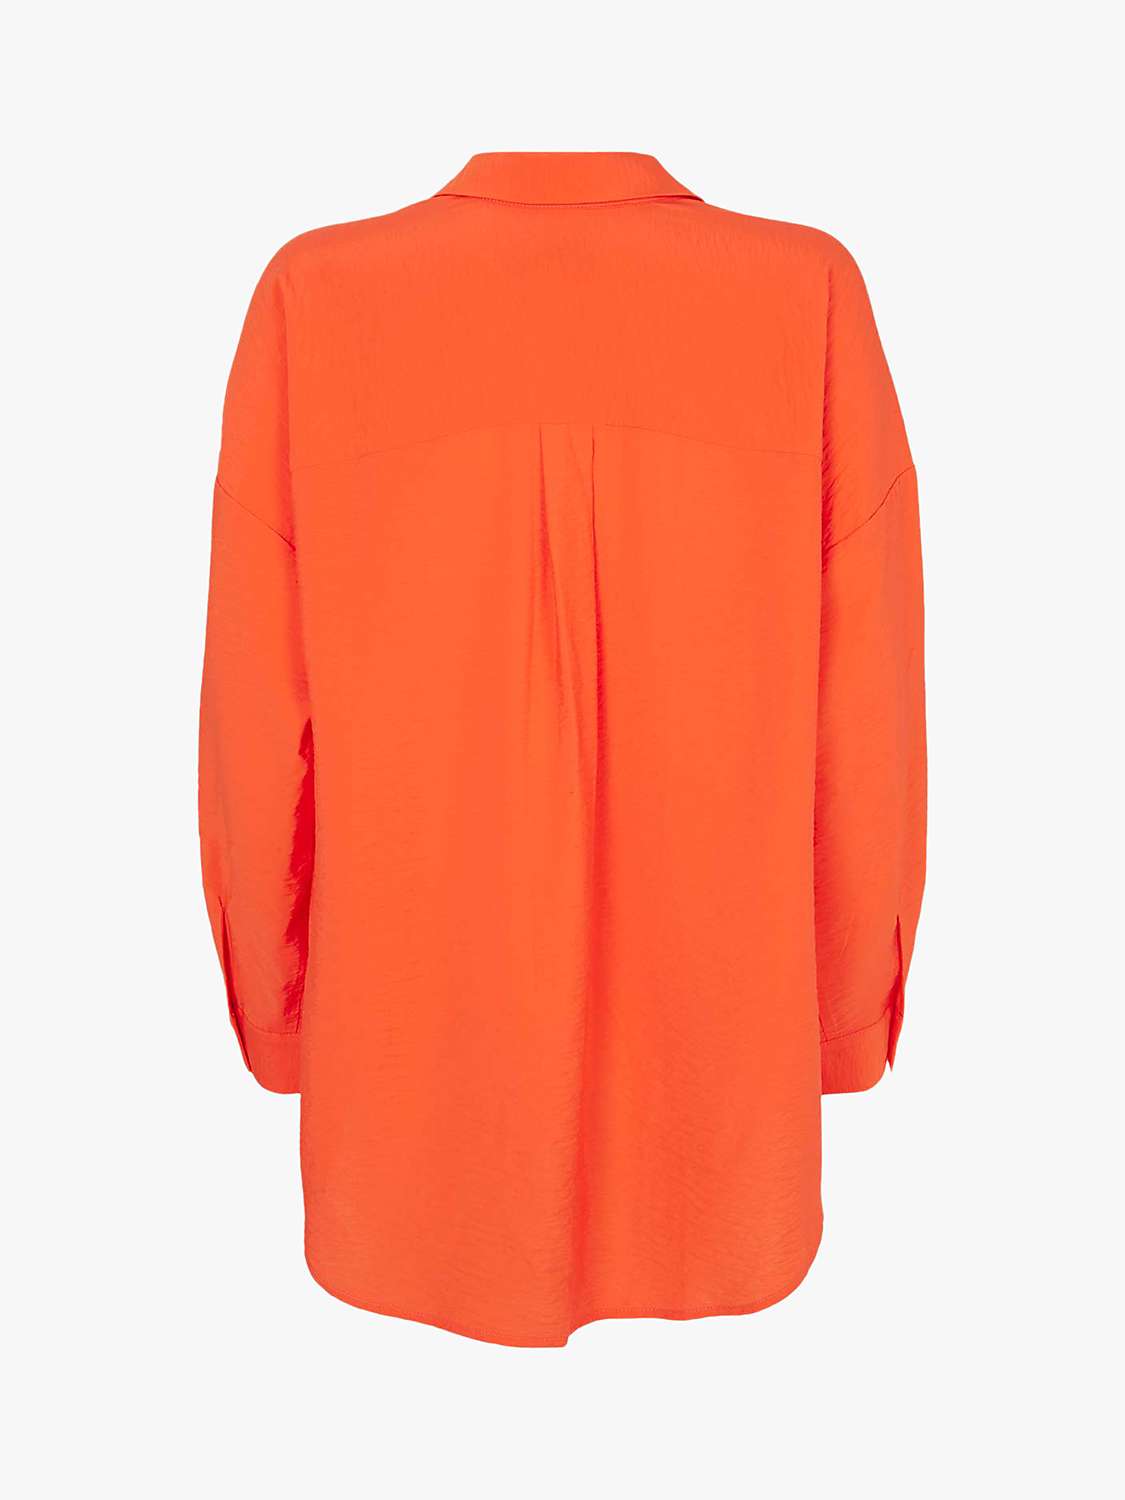 Mint Velvet Oversized Shirt, Orange at John Lewis & Partners